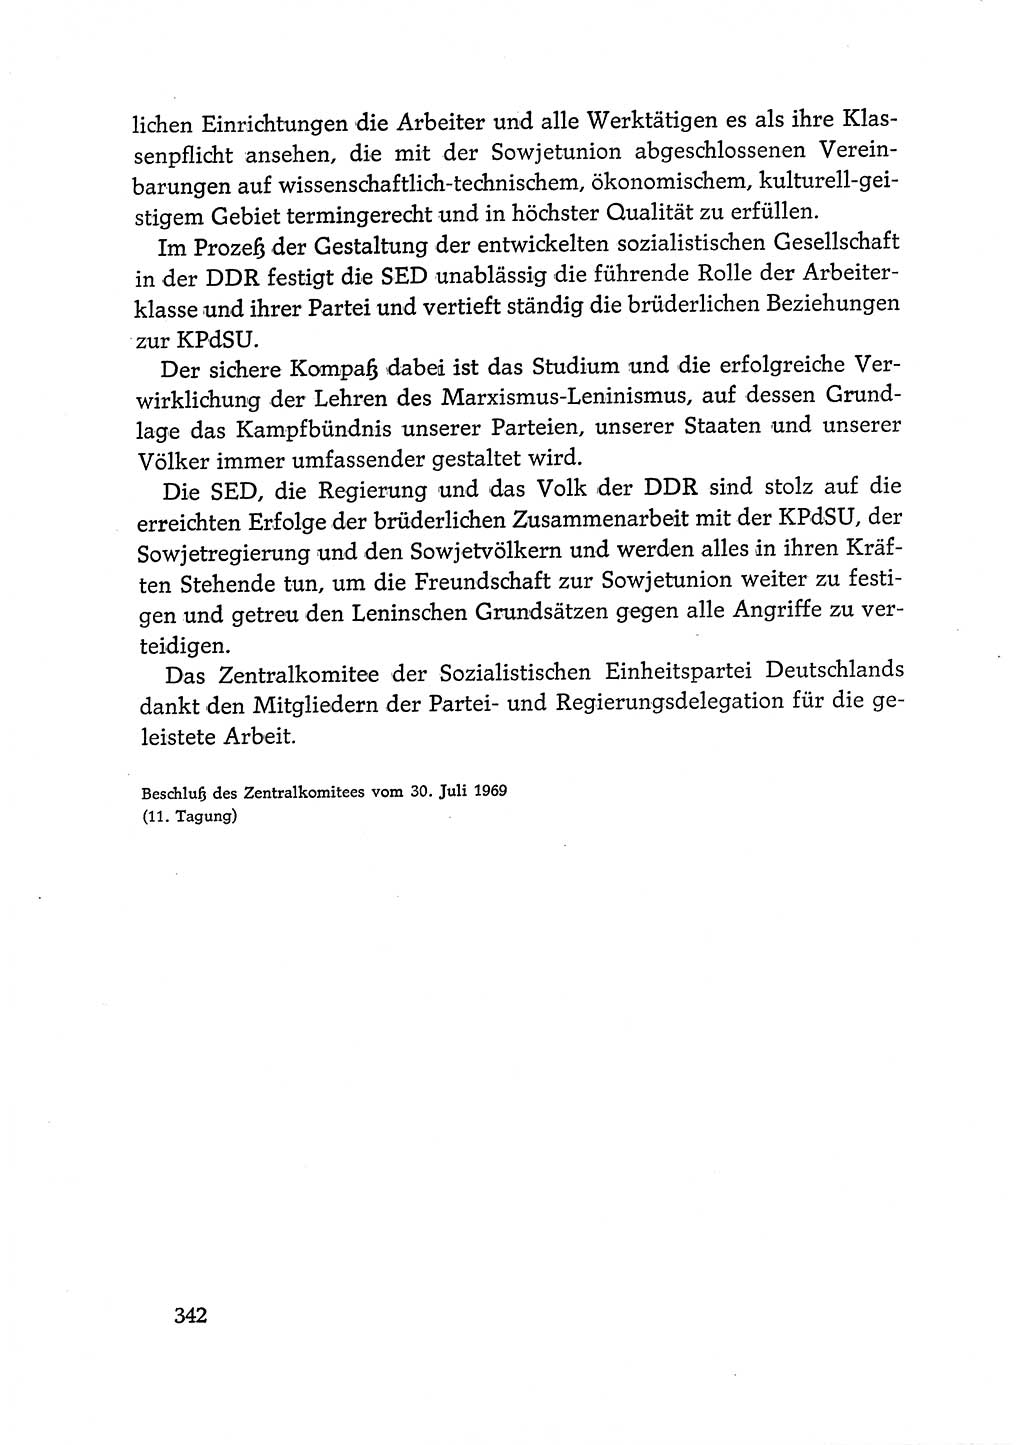 Dokumente der Sozialistischen Einheitspartei Deutschlands (SED) [Deutsche Demokratische Republik (DDR)] 1968-1969, Seite 342 (Dok. SED DDR 1968-1969, S. 342)